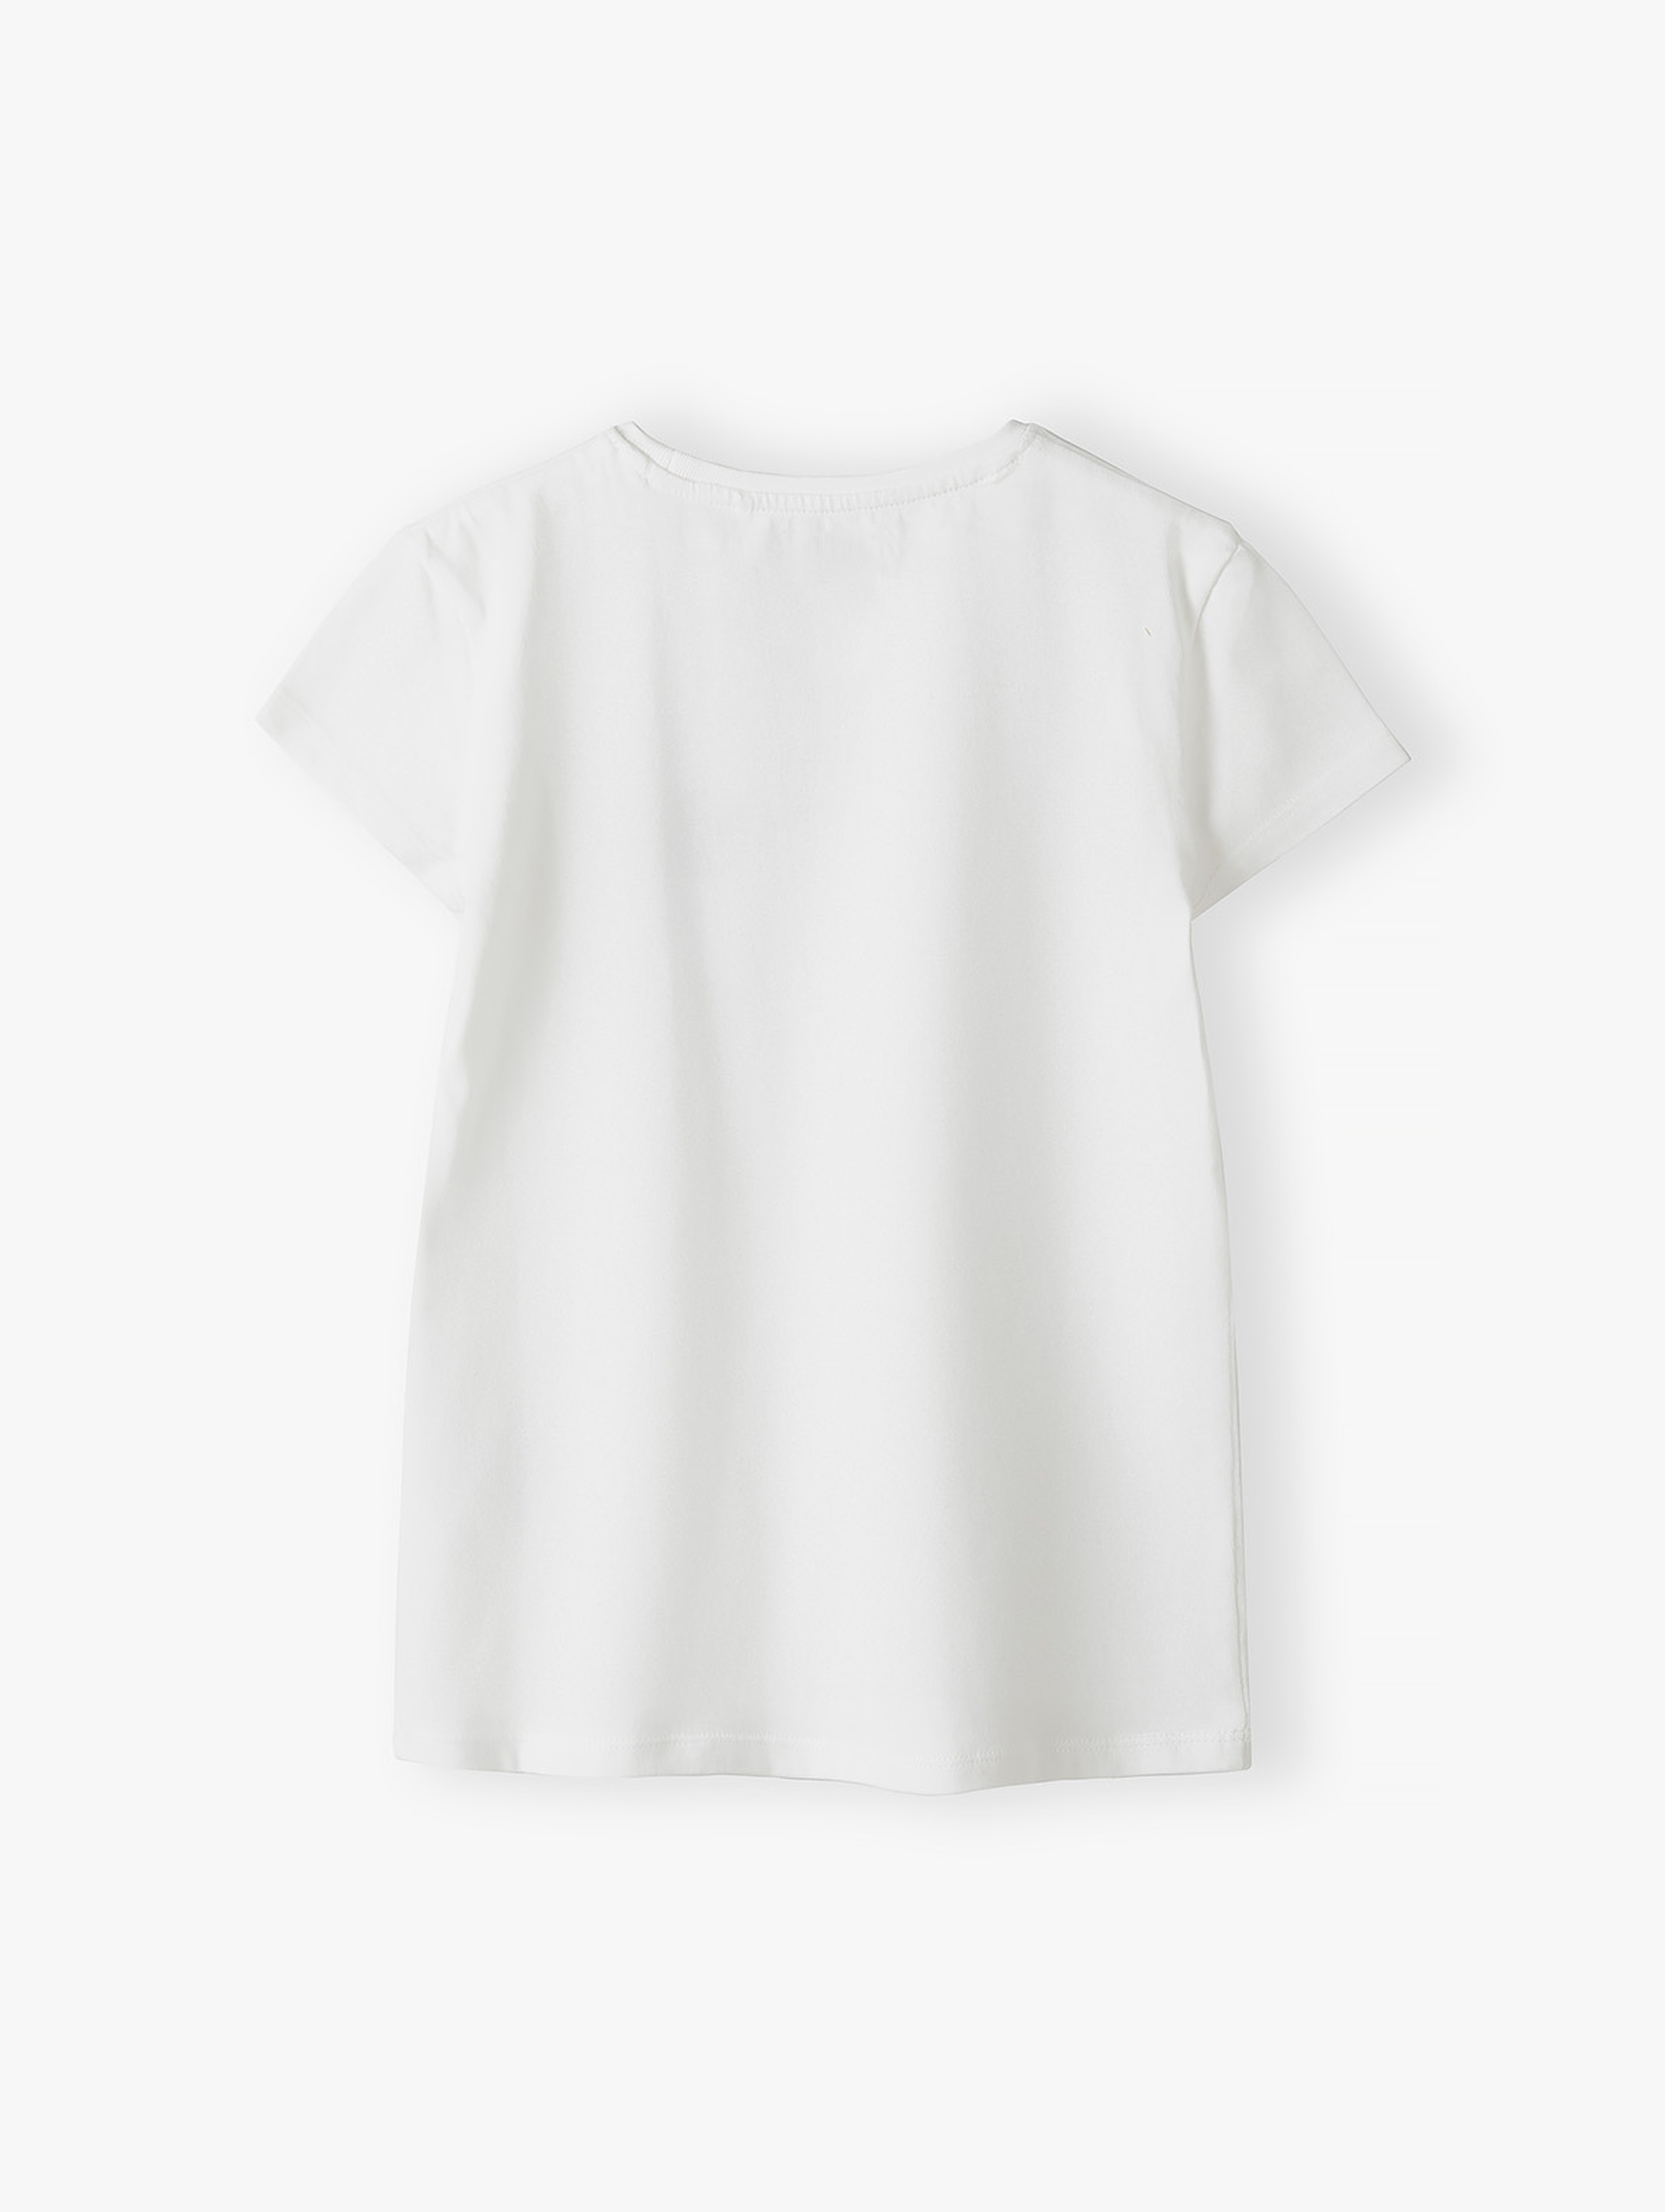 T-shirt bawełniany dla dziewczynki - biały z napisem Busy doing nothing